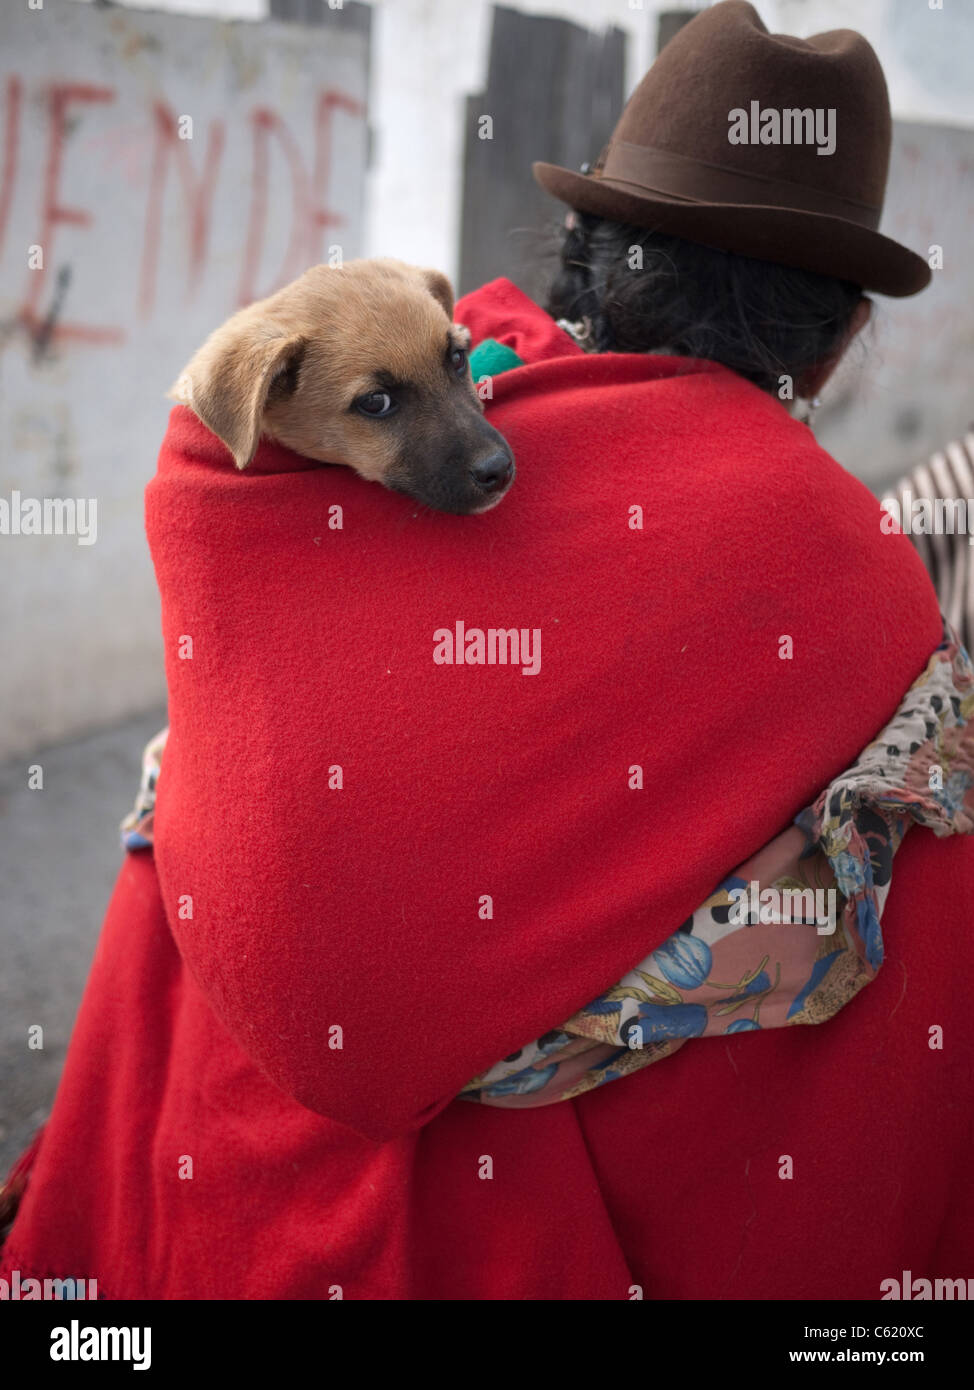 Indigene Frau einen Hund auf dem Rücken tragen Stockfotografie - Alamy